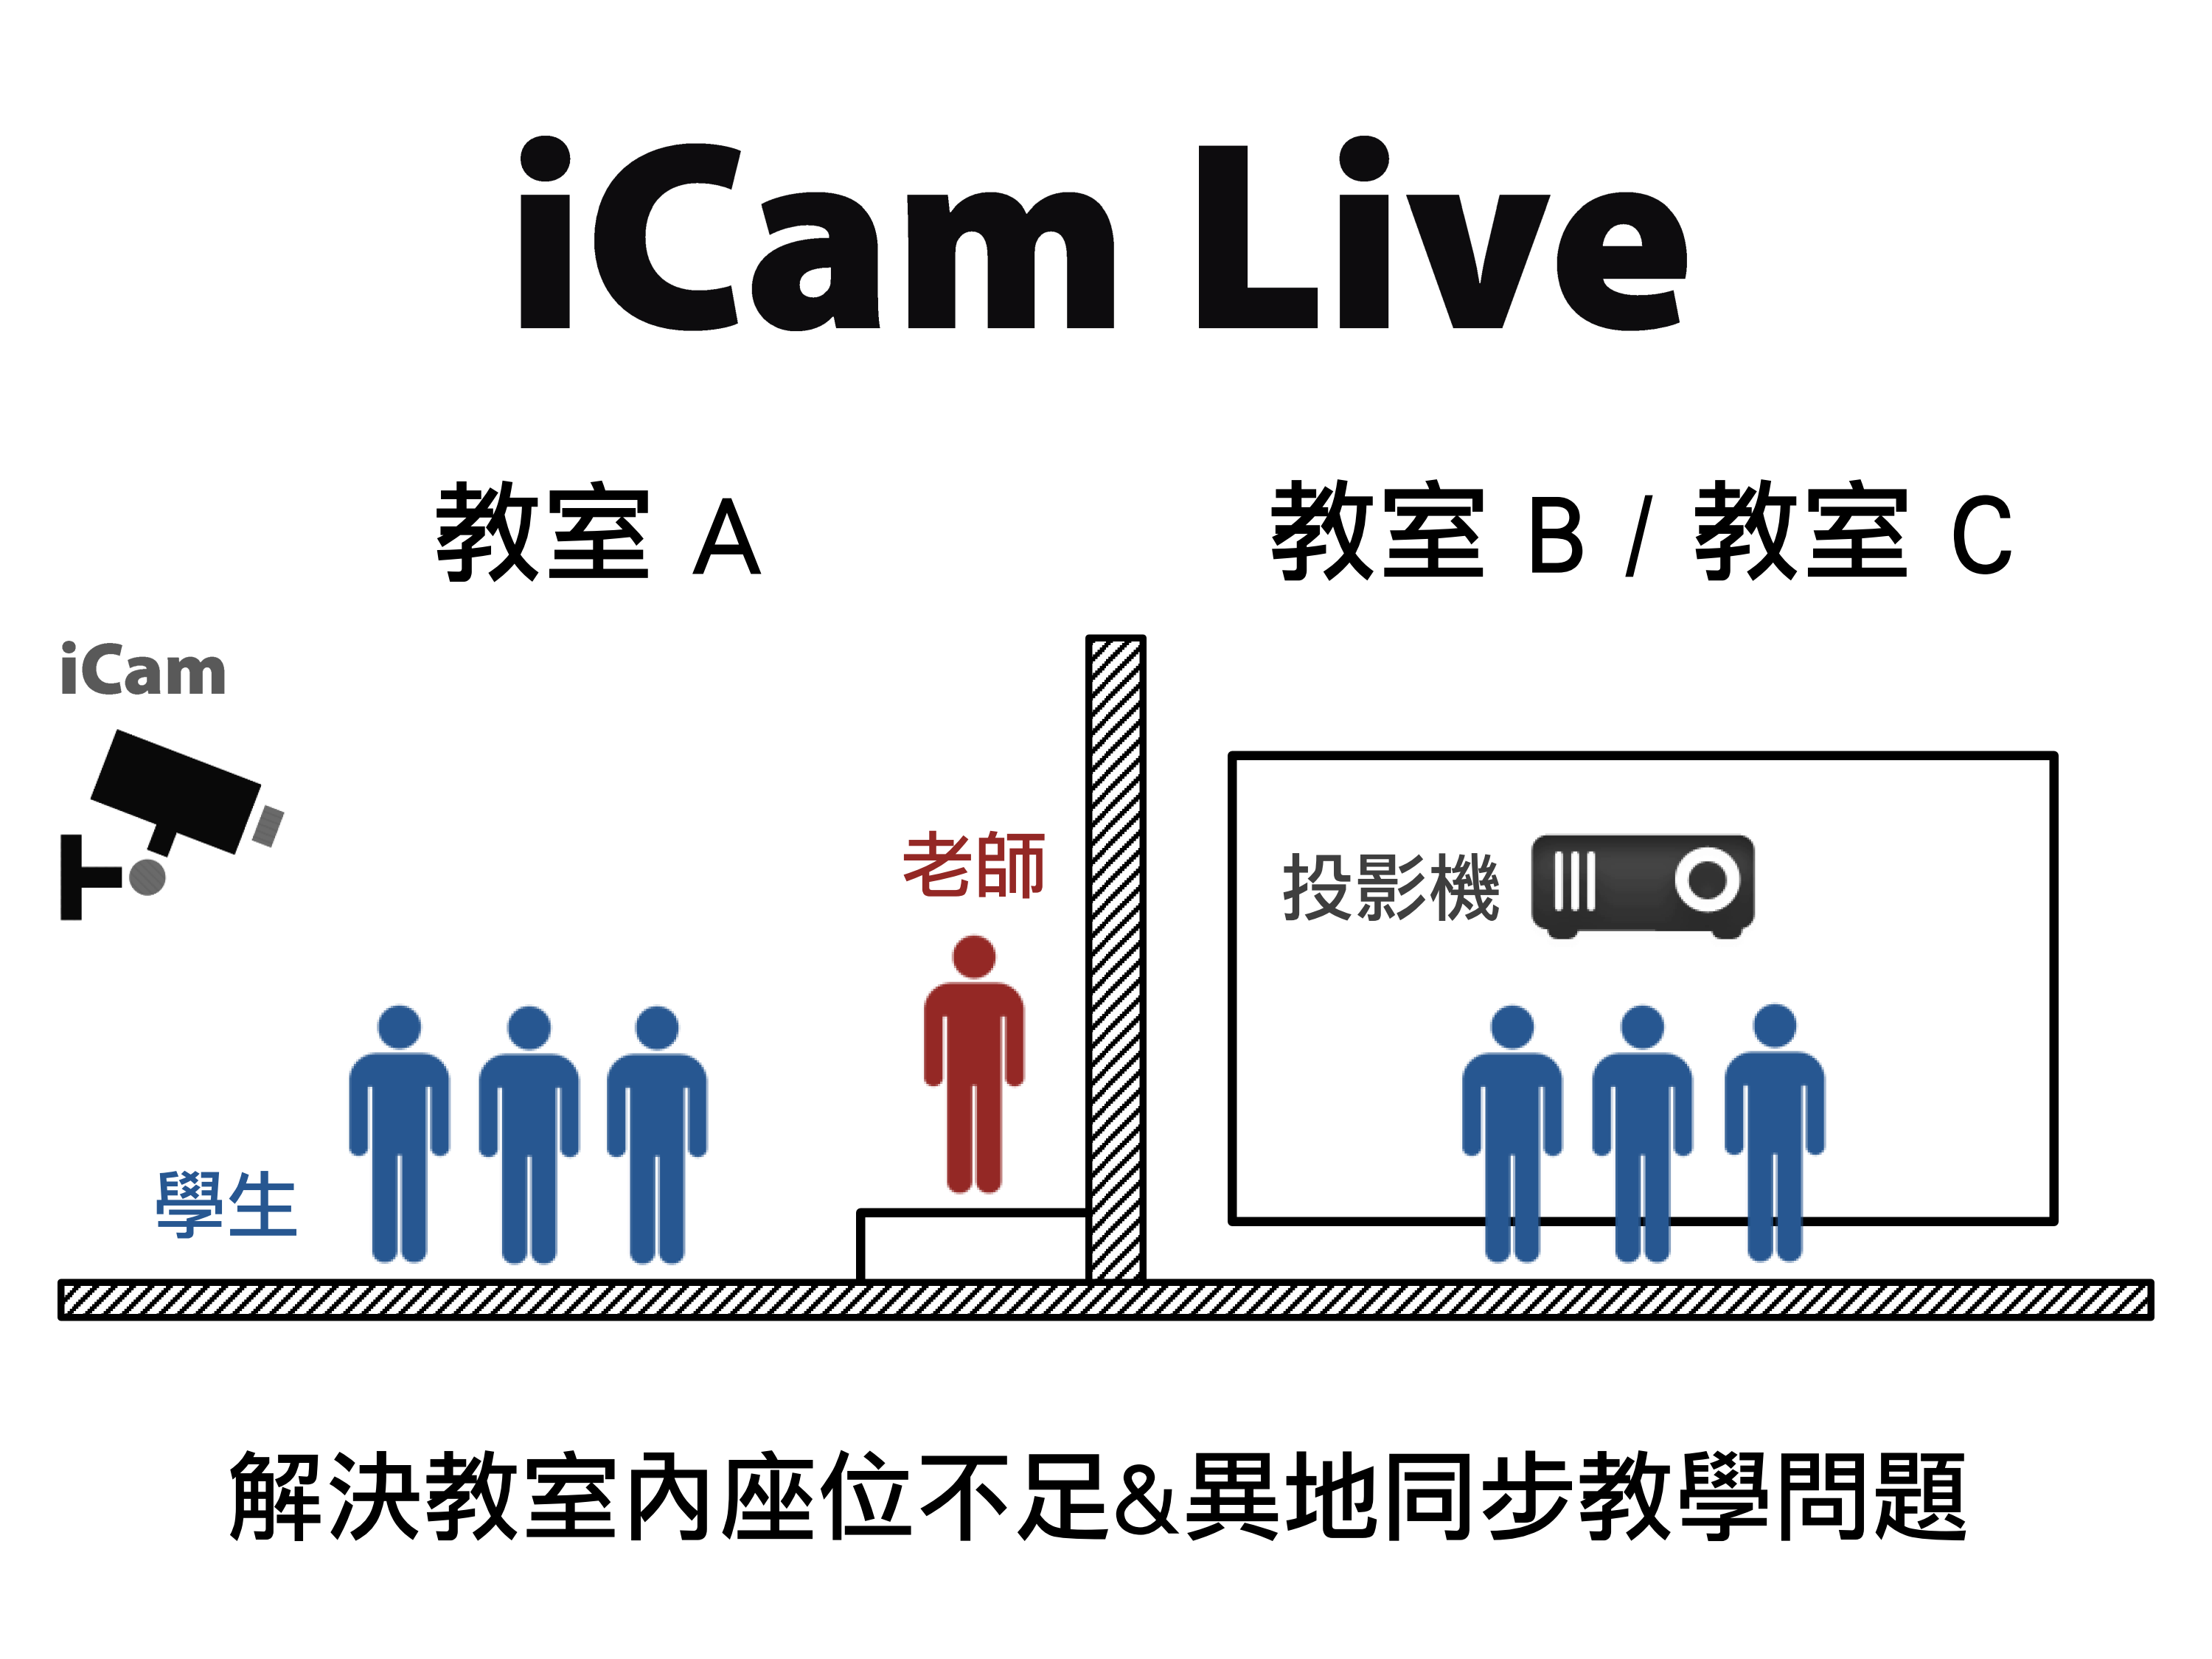 藍眼科技提供免費的iCam Live現場直播軟體給教育單位